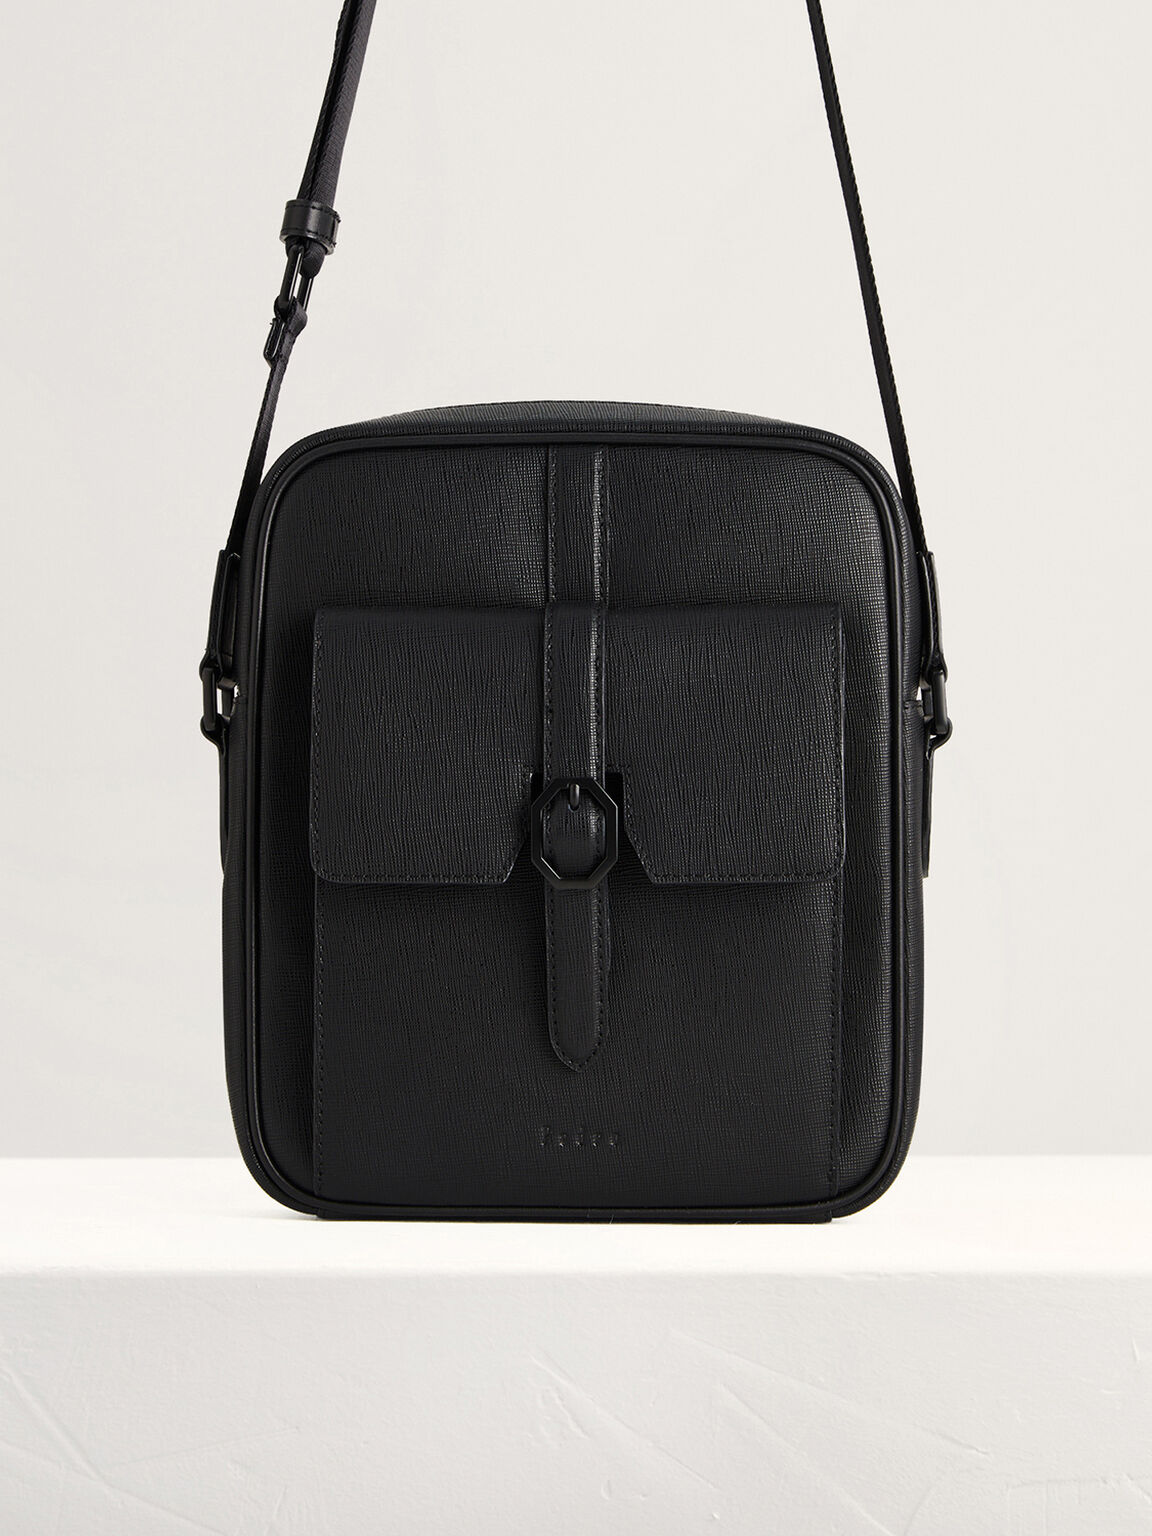 Buckled Leather Sling Bag, Black